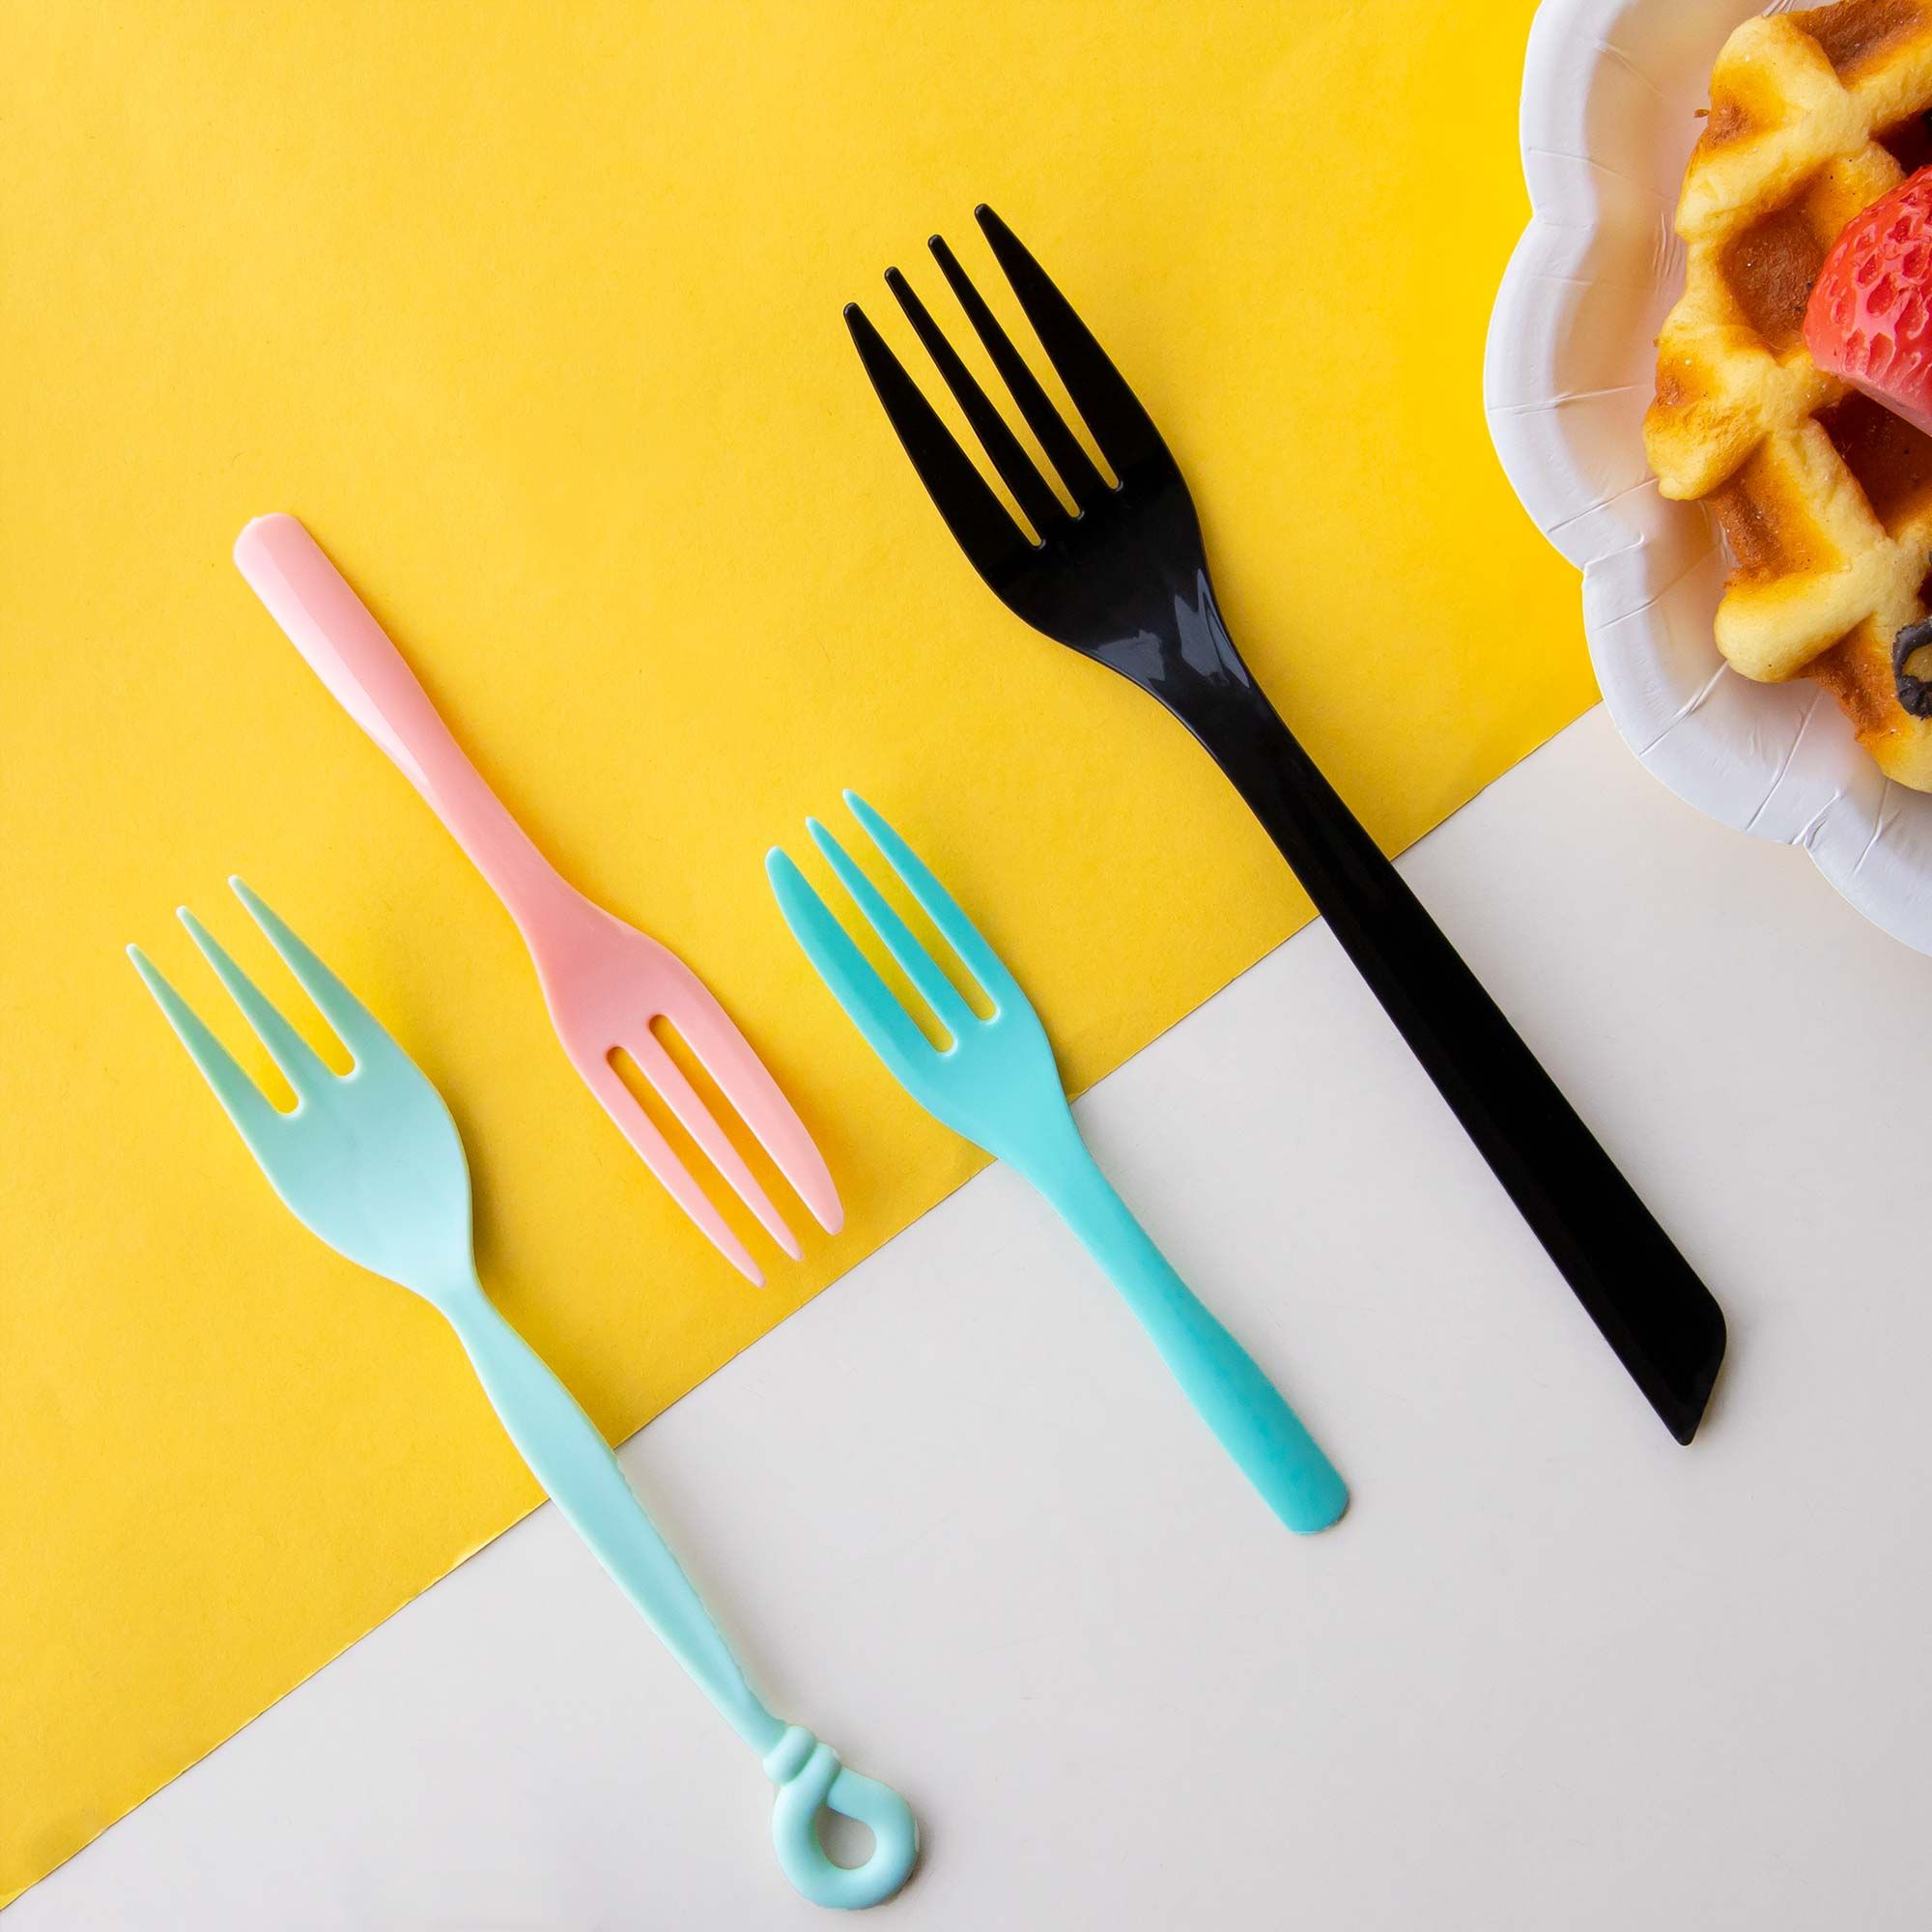 Forchetta di plastica - Forchette monouso, forchette colorate